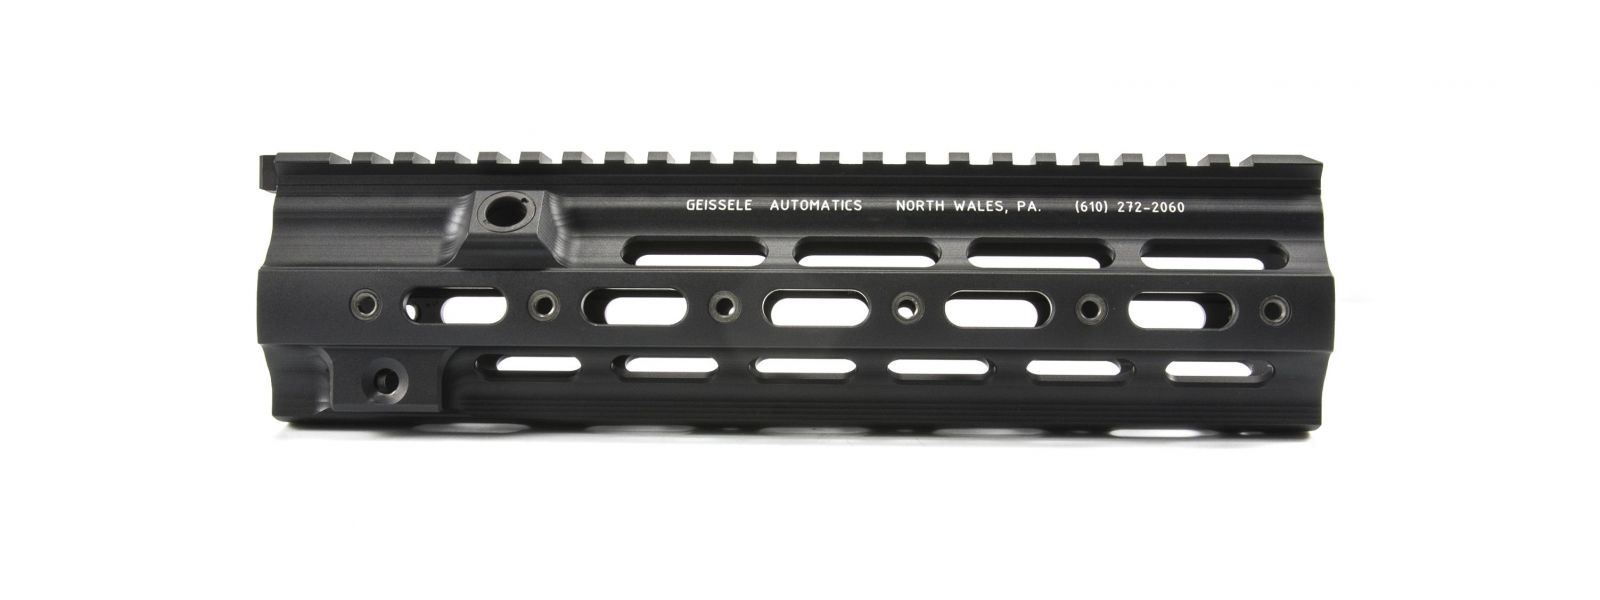 Geissele předpažbí Super Modular Rail pro HK416 - černá, 10,5"